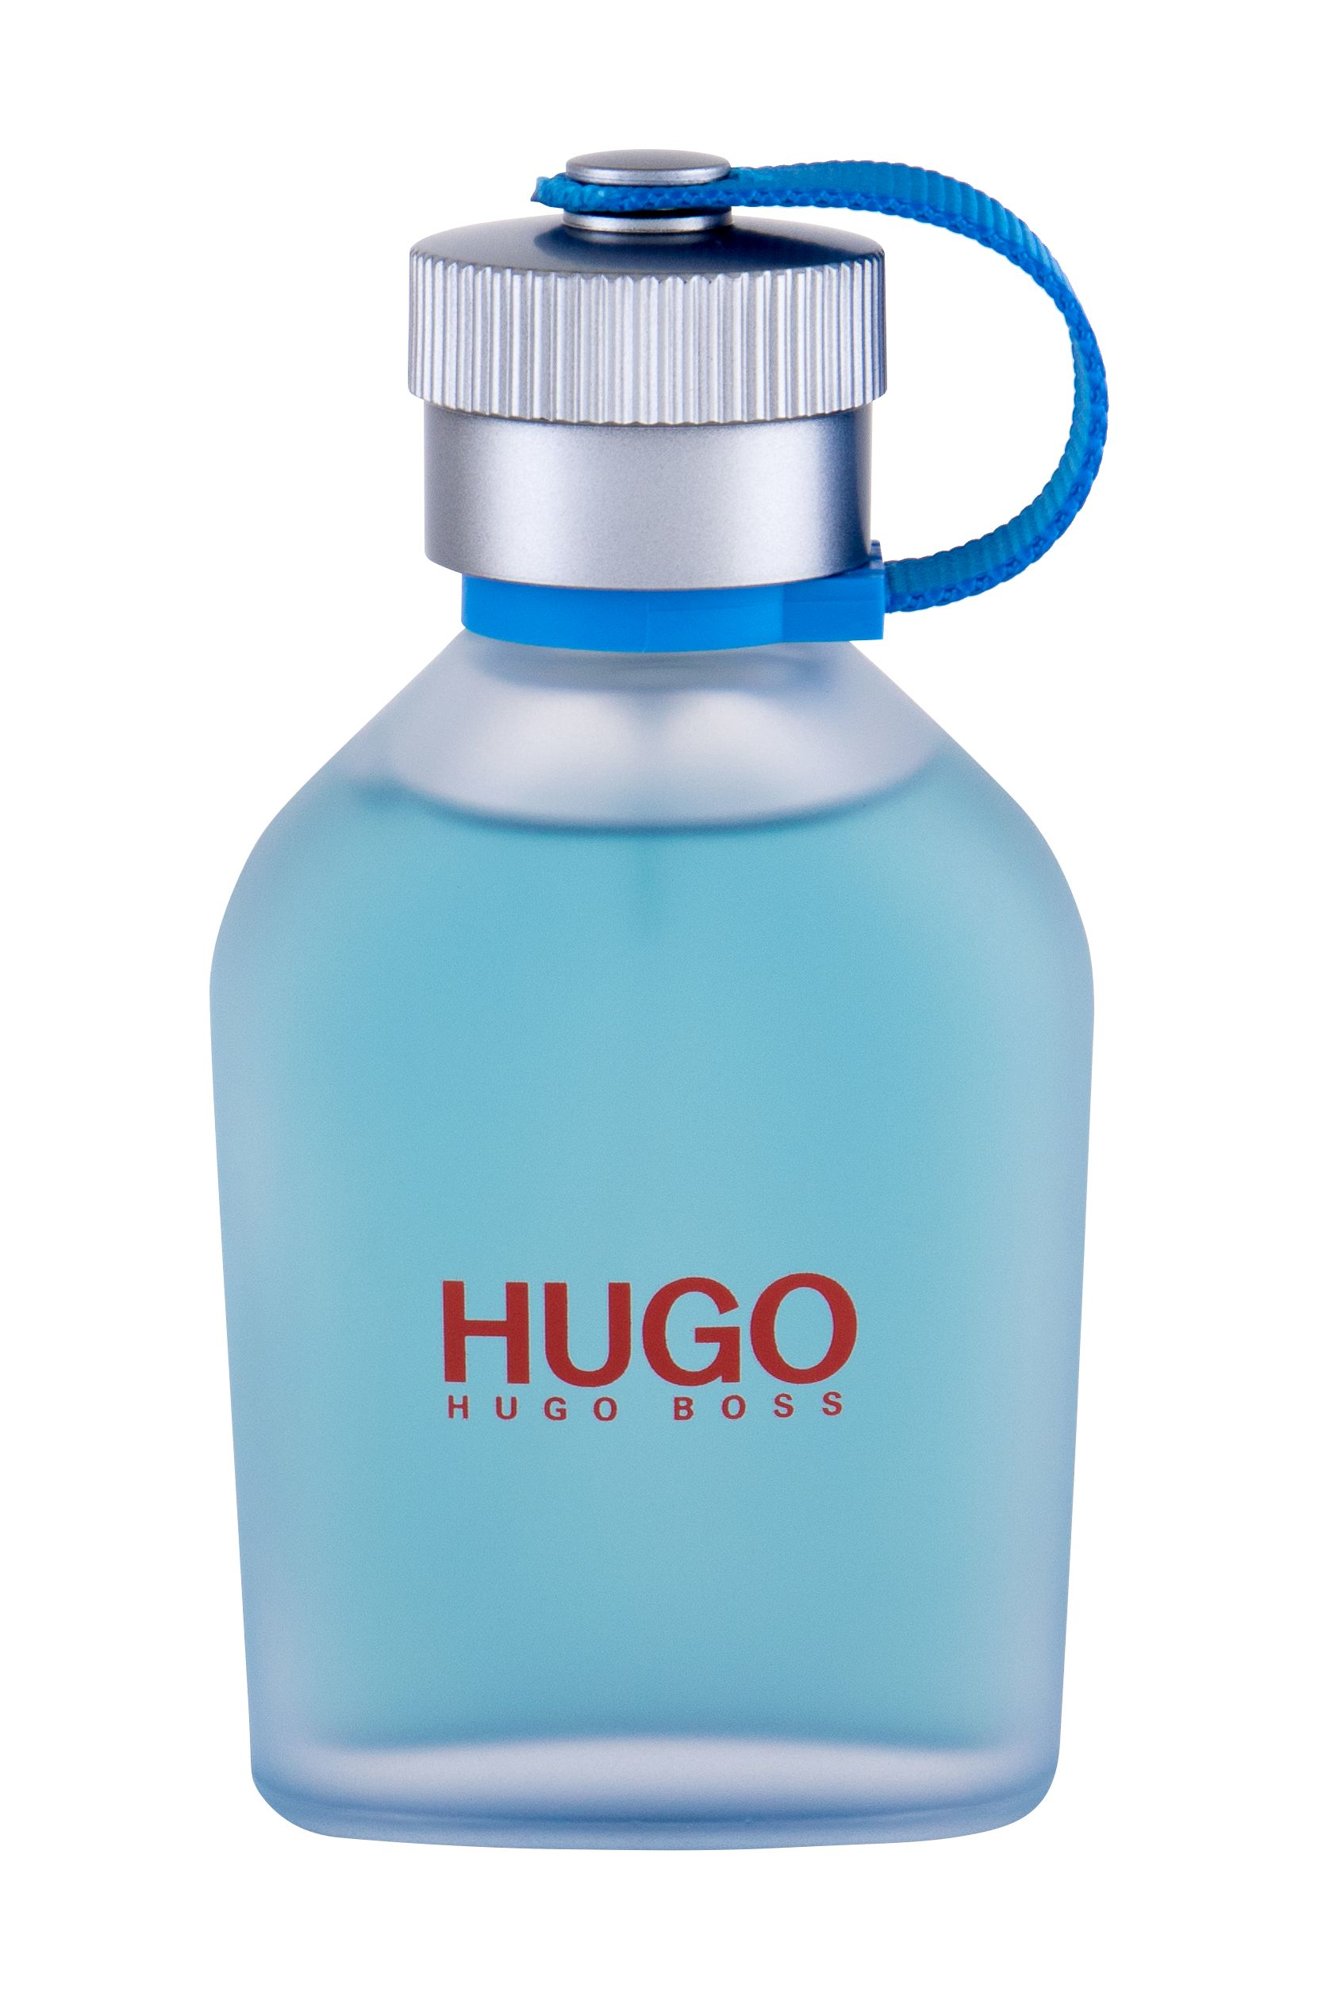 HUGO BOSS Hugo